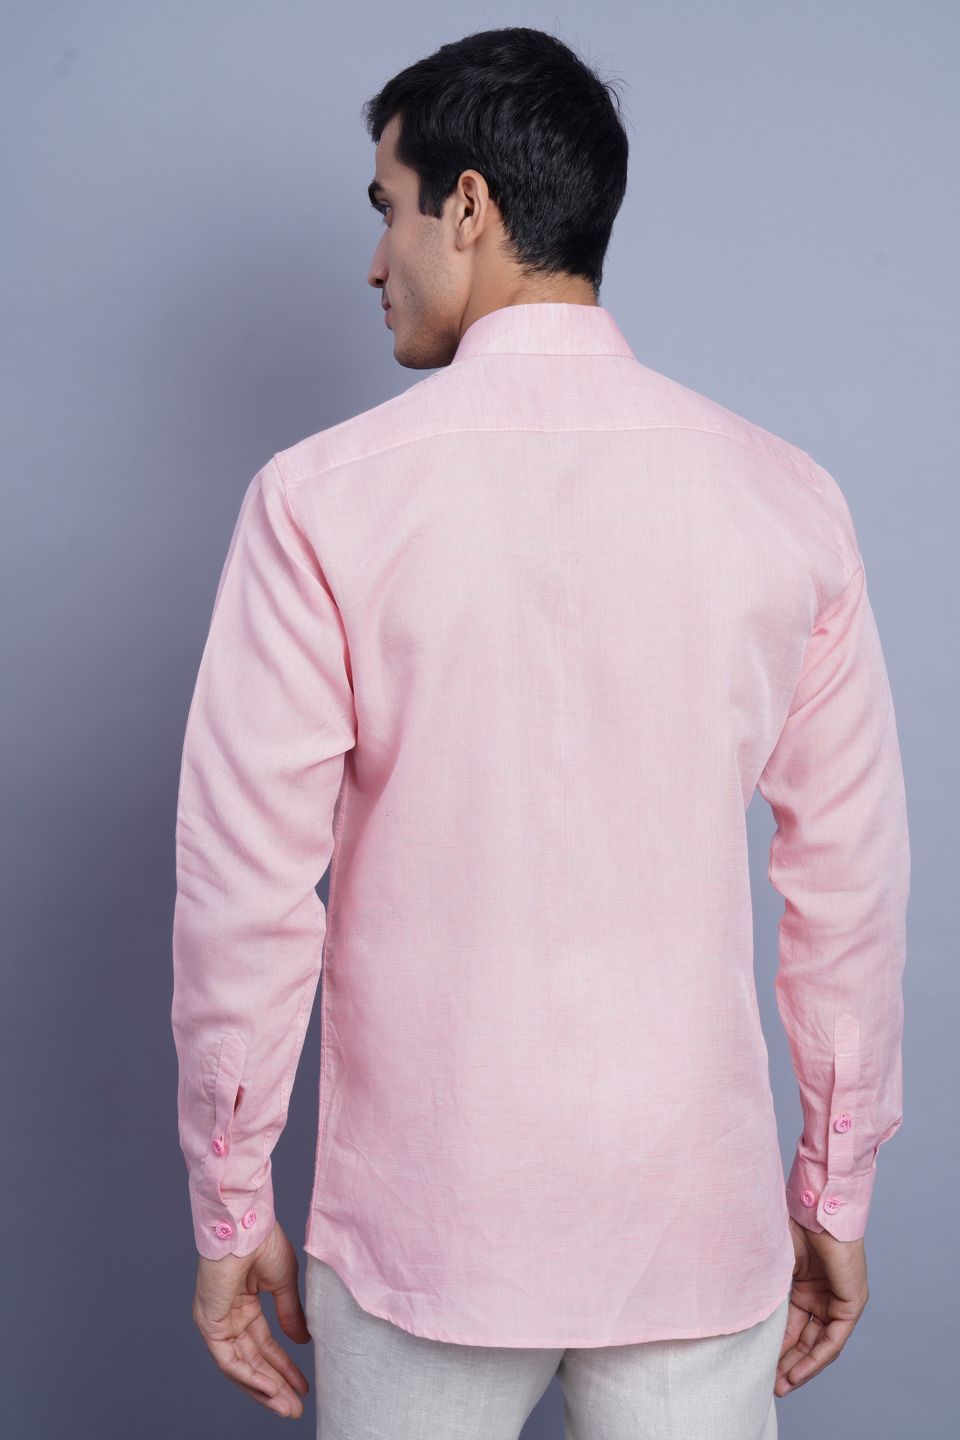 WINTAGE Men's Linen Casual Shirt: Light Pink